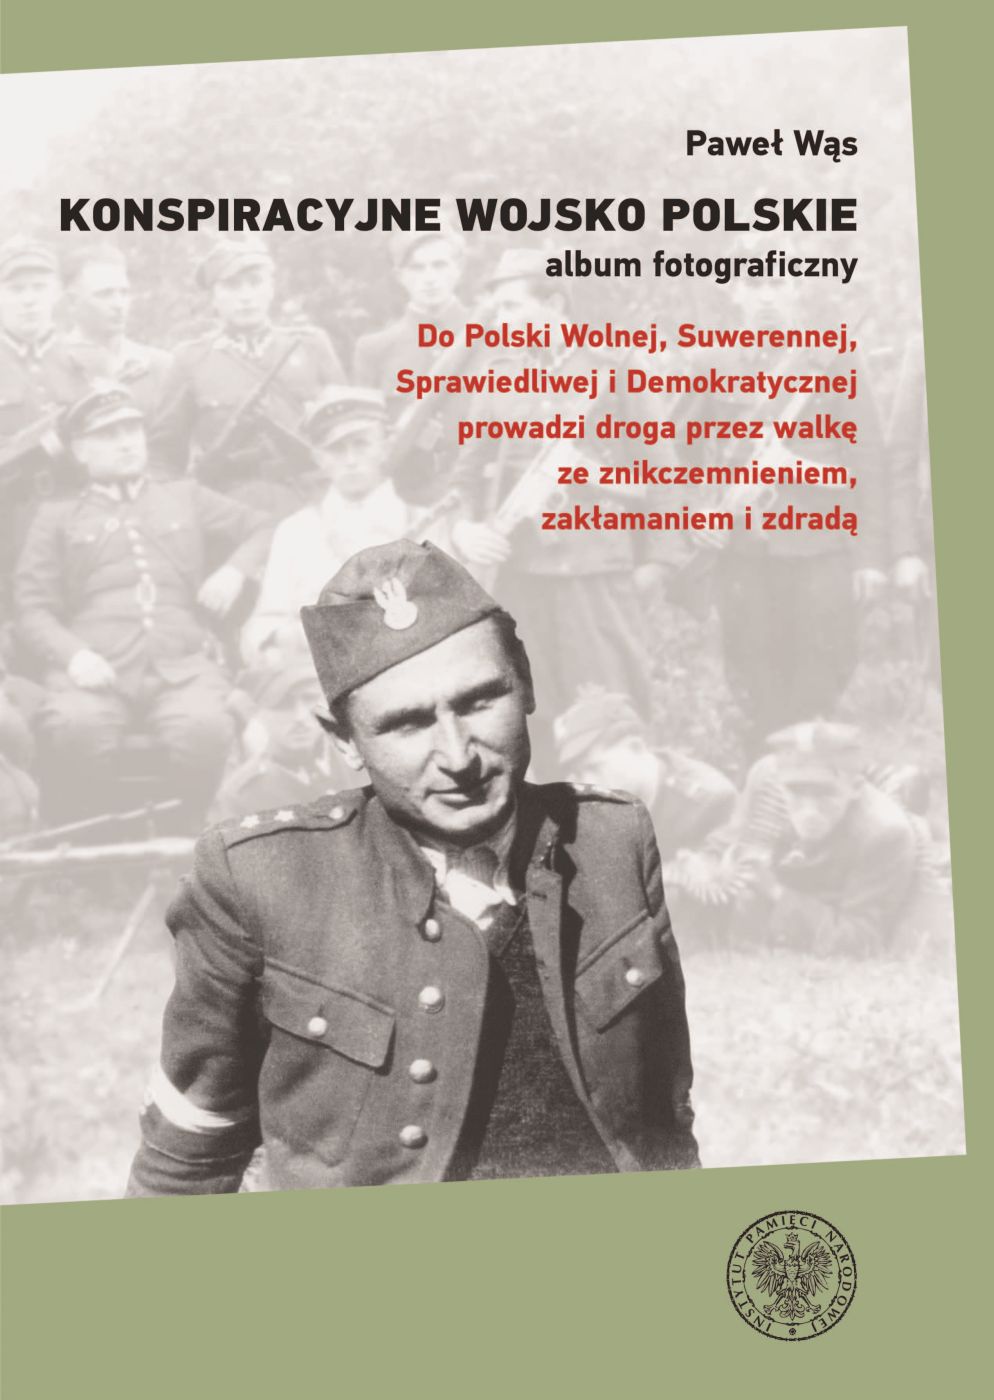 Konspiracyjne Wojsko Polskie album fotograficzny (P.Wąs)